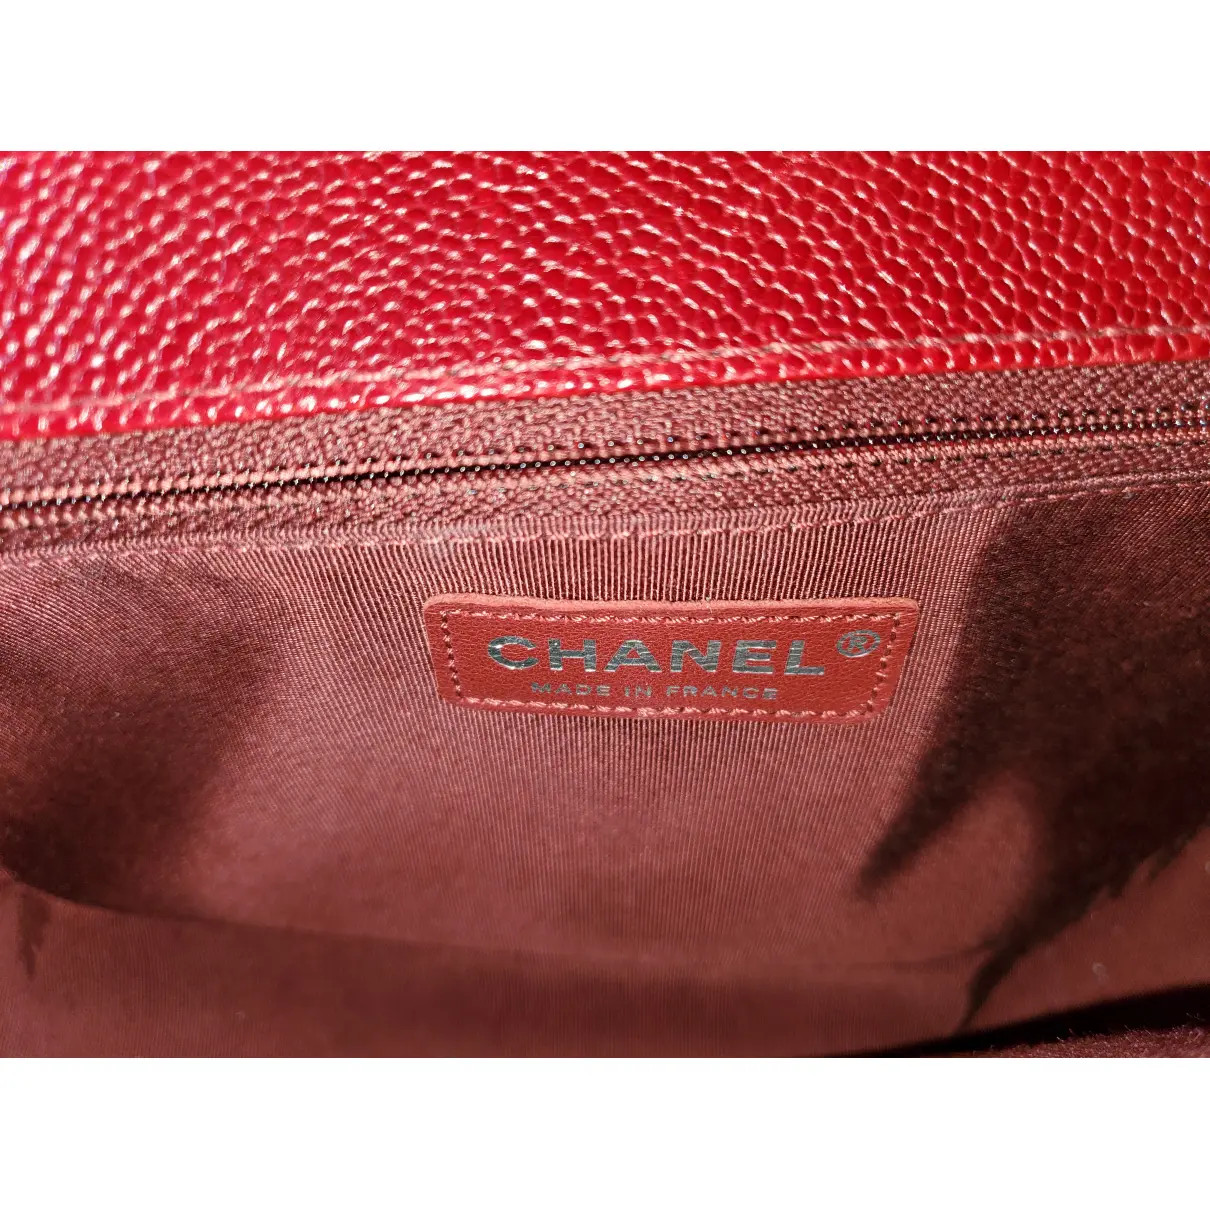 Boy leather crossbody bag Chanel